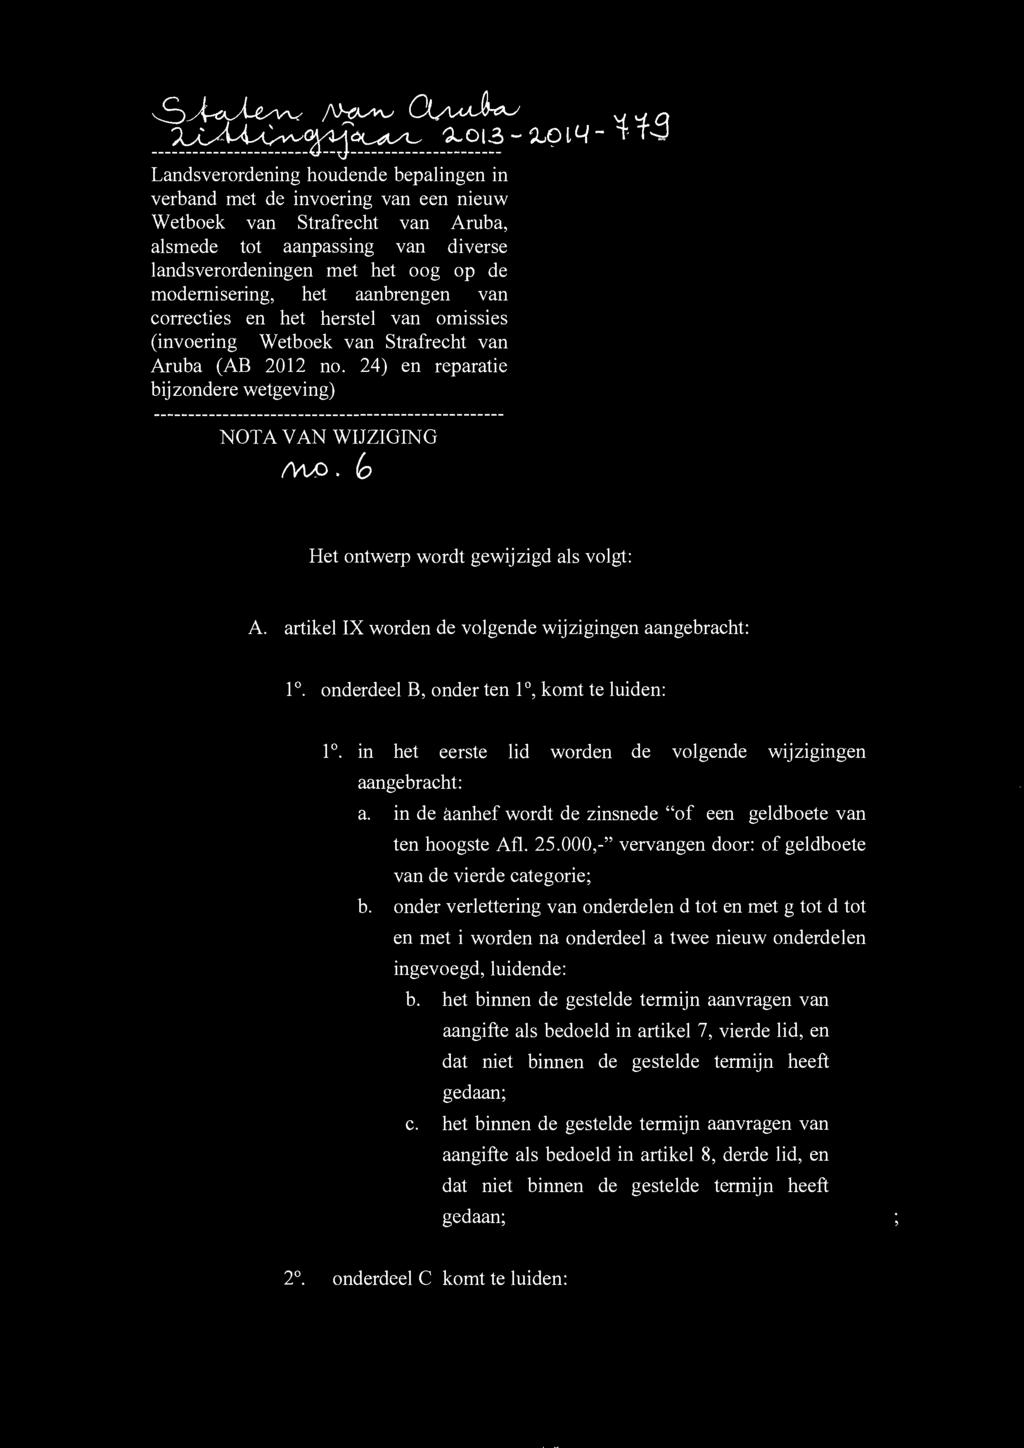 modernisering, het aanbrengen van correcties en het herstel van omissies (invoering Wetboek van Strafrecht van Aruba (AB 2012 no. 24) en reparatie bijzondere wetgeving) NOTA VAN WIJZIGING MAO.